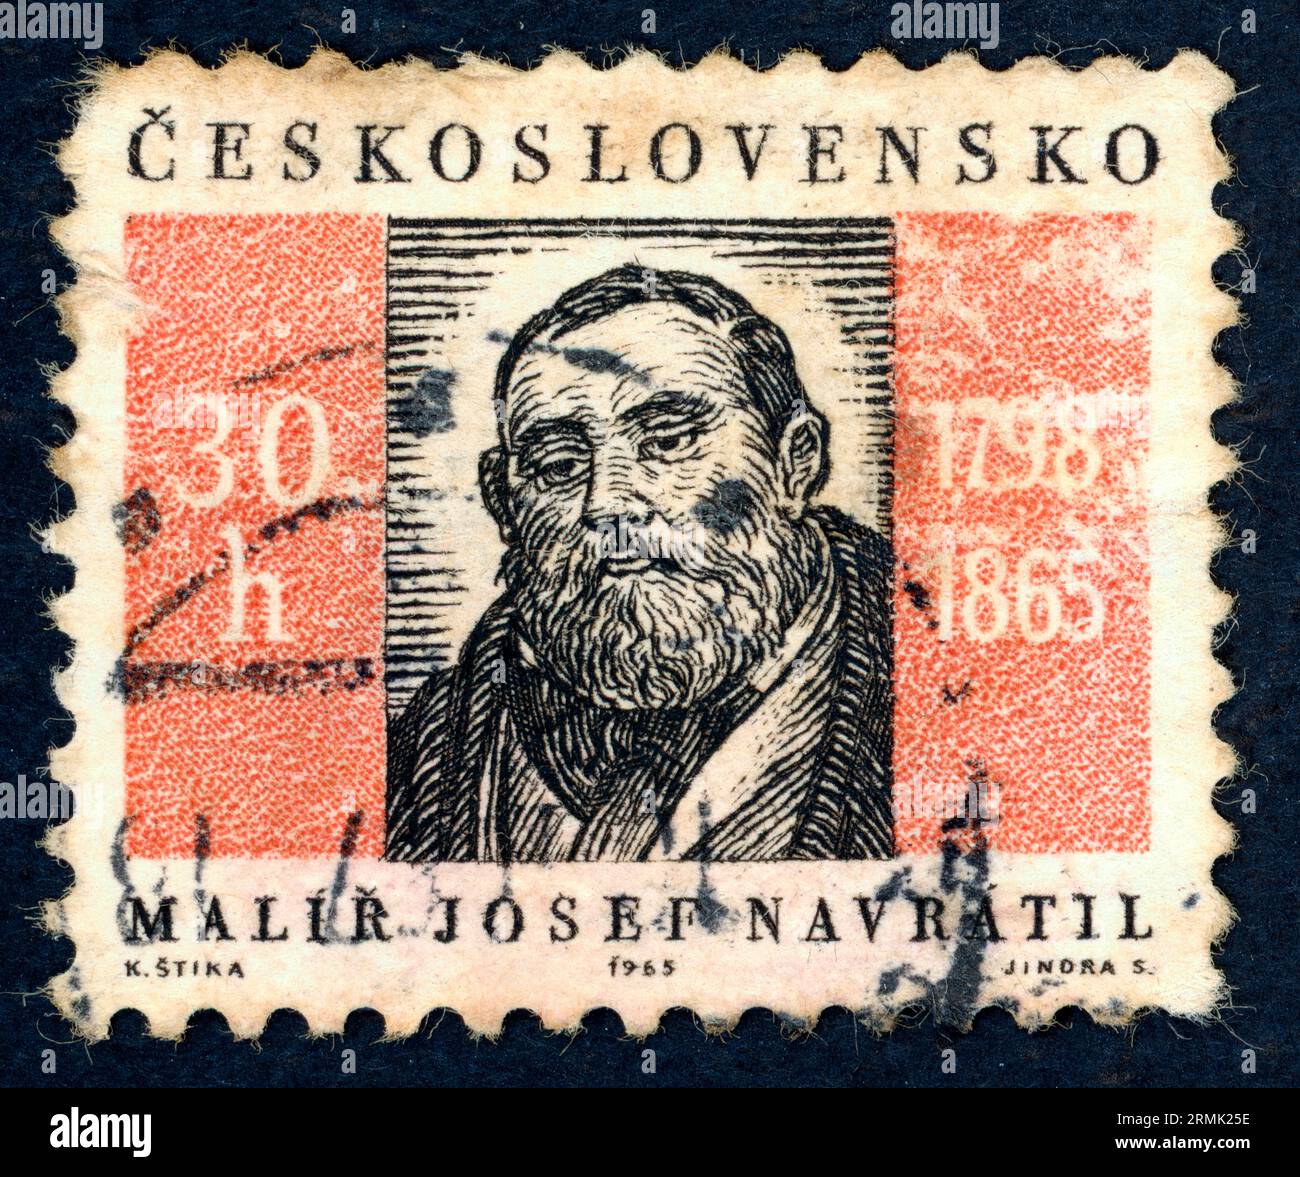 Josef Navrátil (1798 – 1865). Timbre-poste émis en Tchécoslovaquie en 1965 à l'occasion du 100e anniversaire de la mort de Navrátil. Josef Navrátil était un peintre tchèque. Banque D'Images